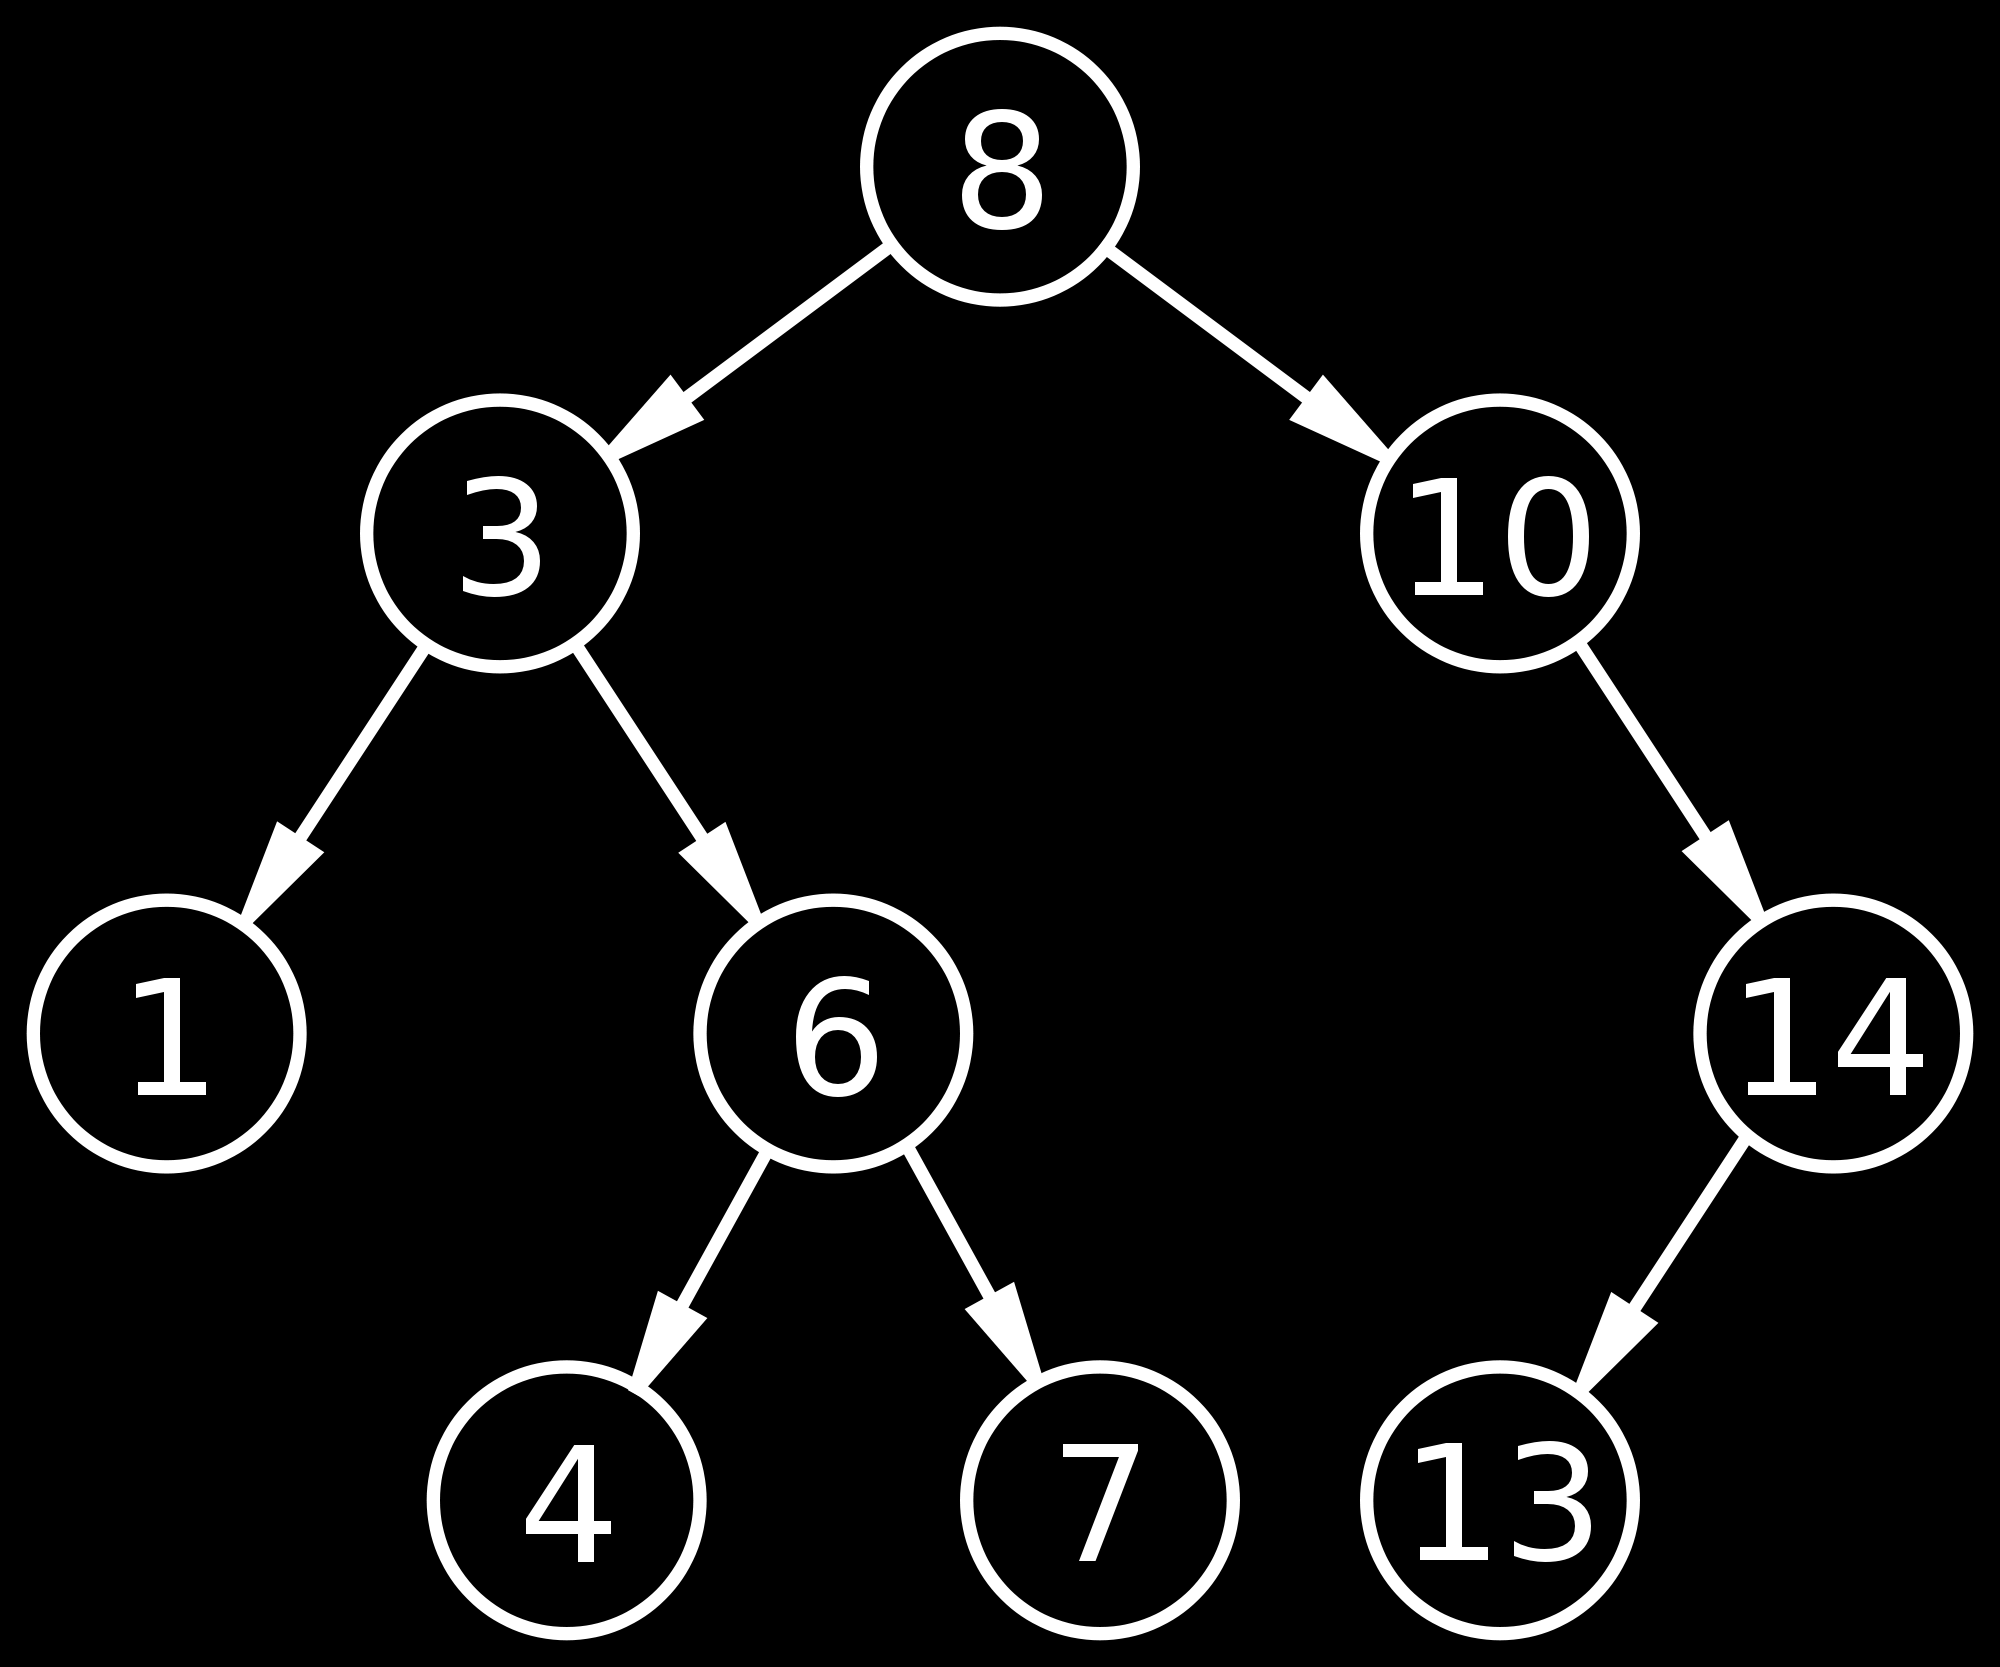 Binary trees